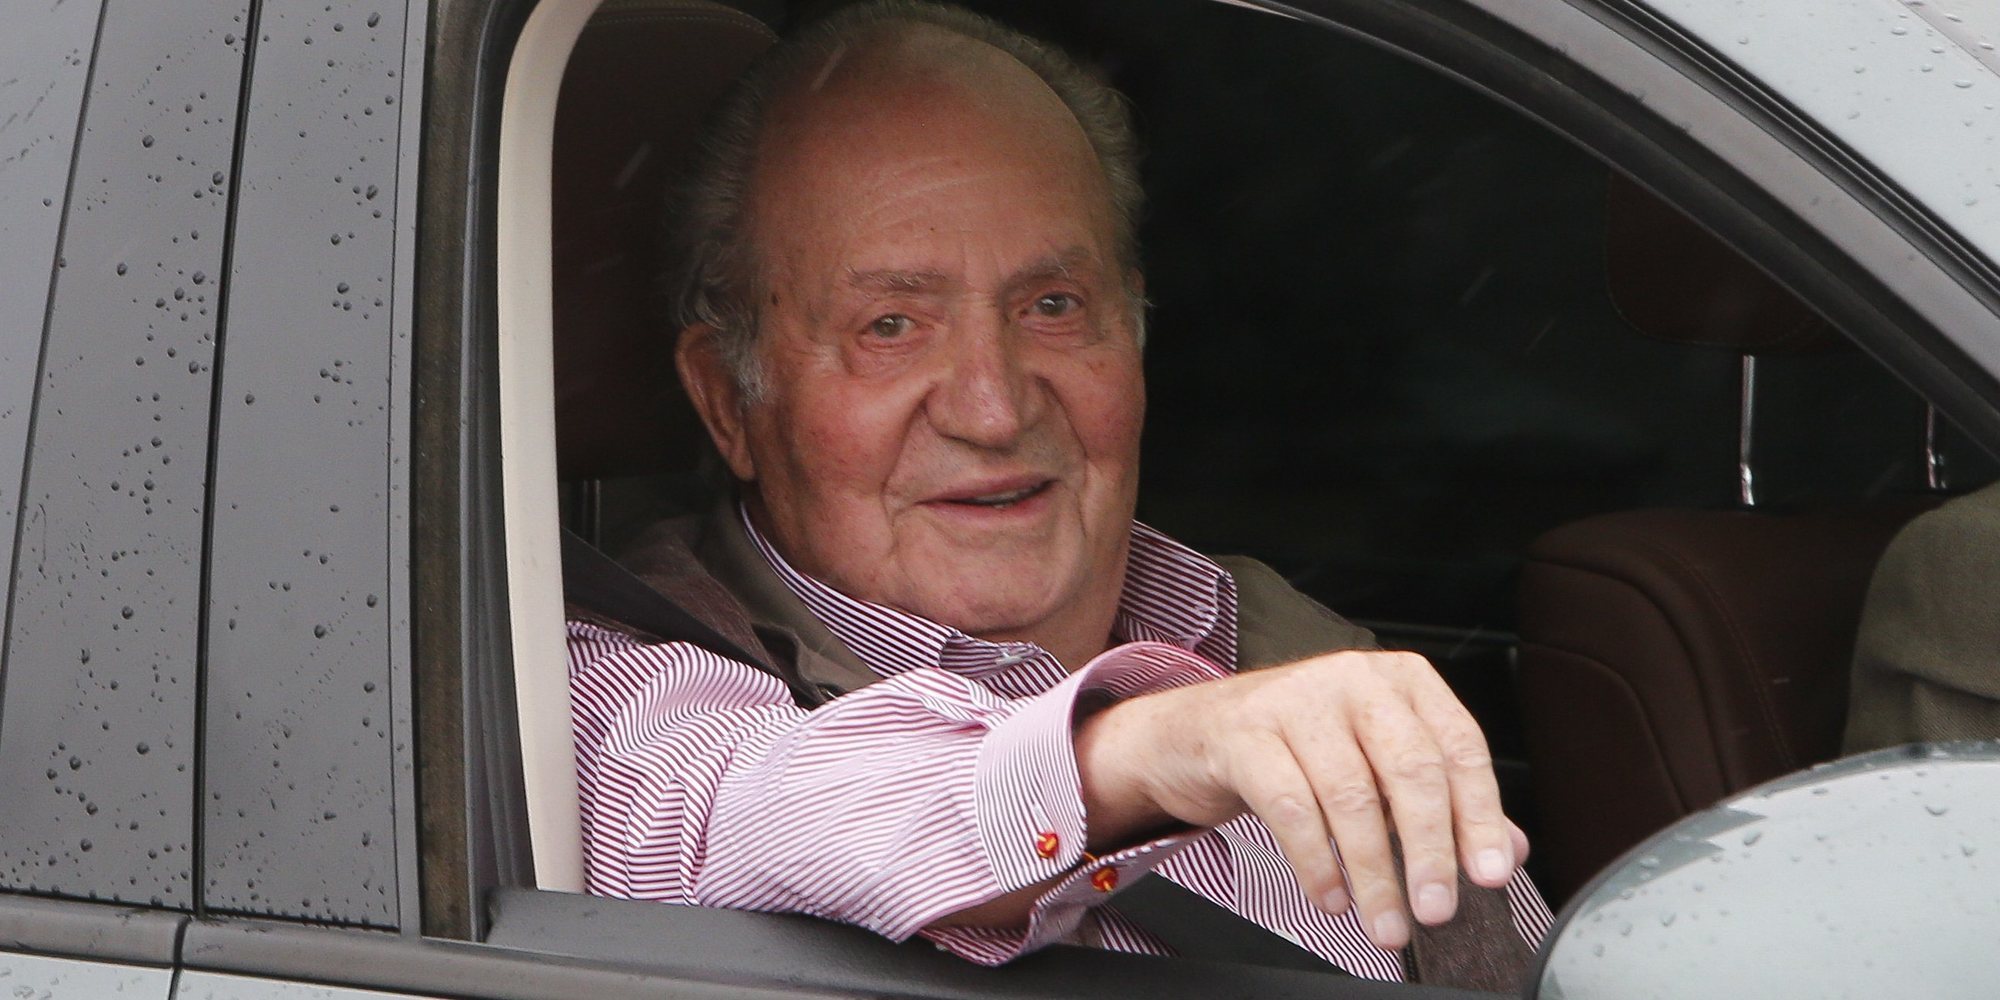 Primera imagen del Rey Juan Carlos tras abandonar España